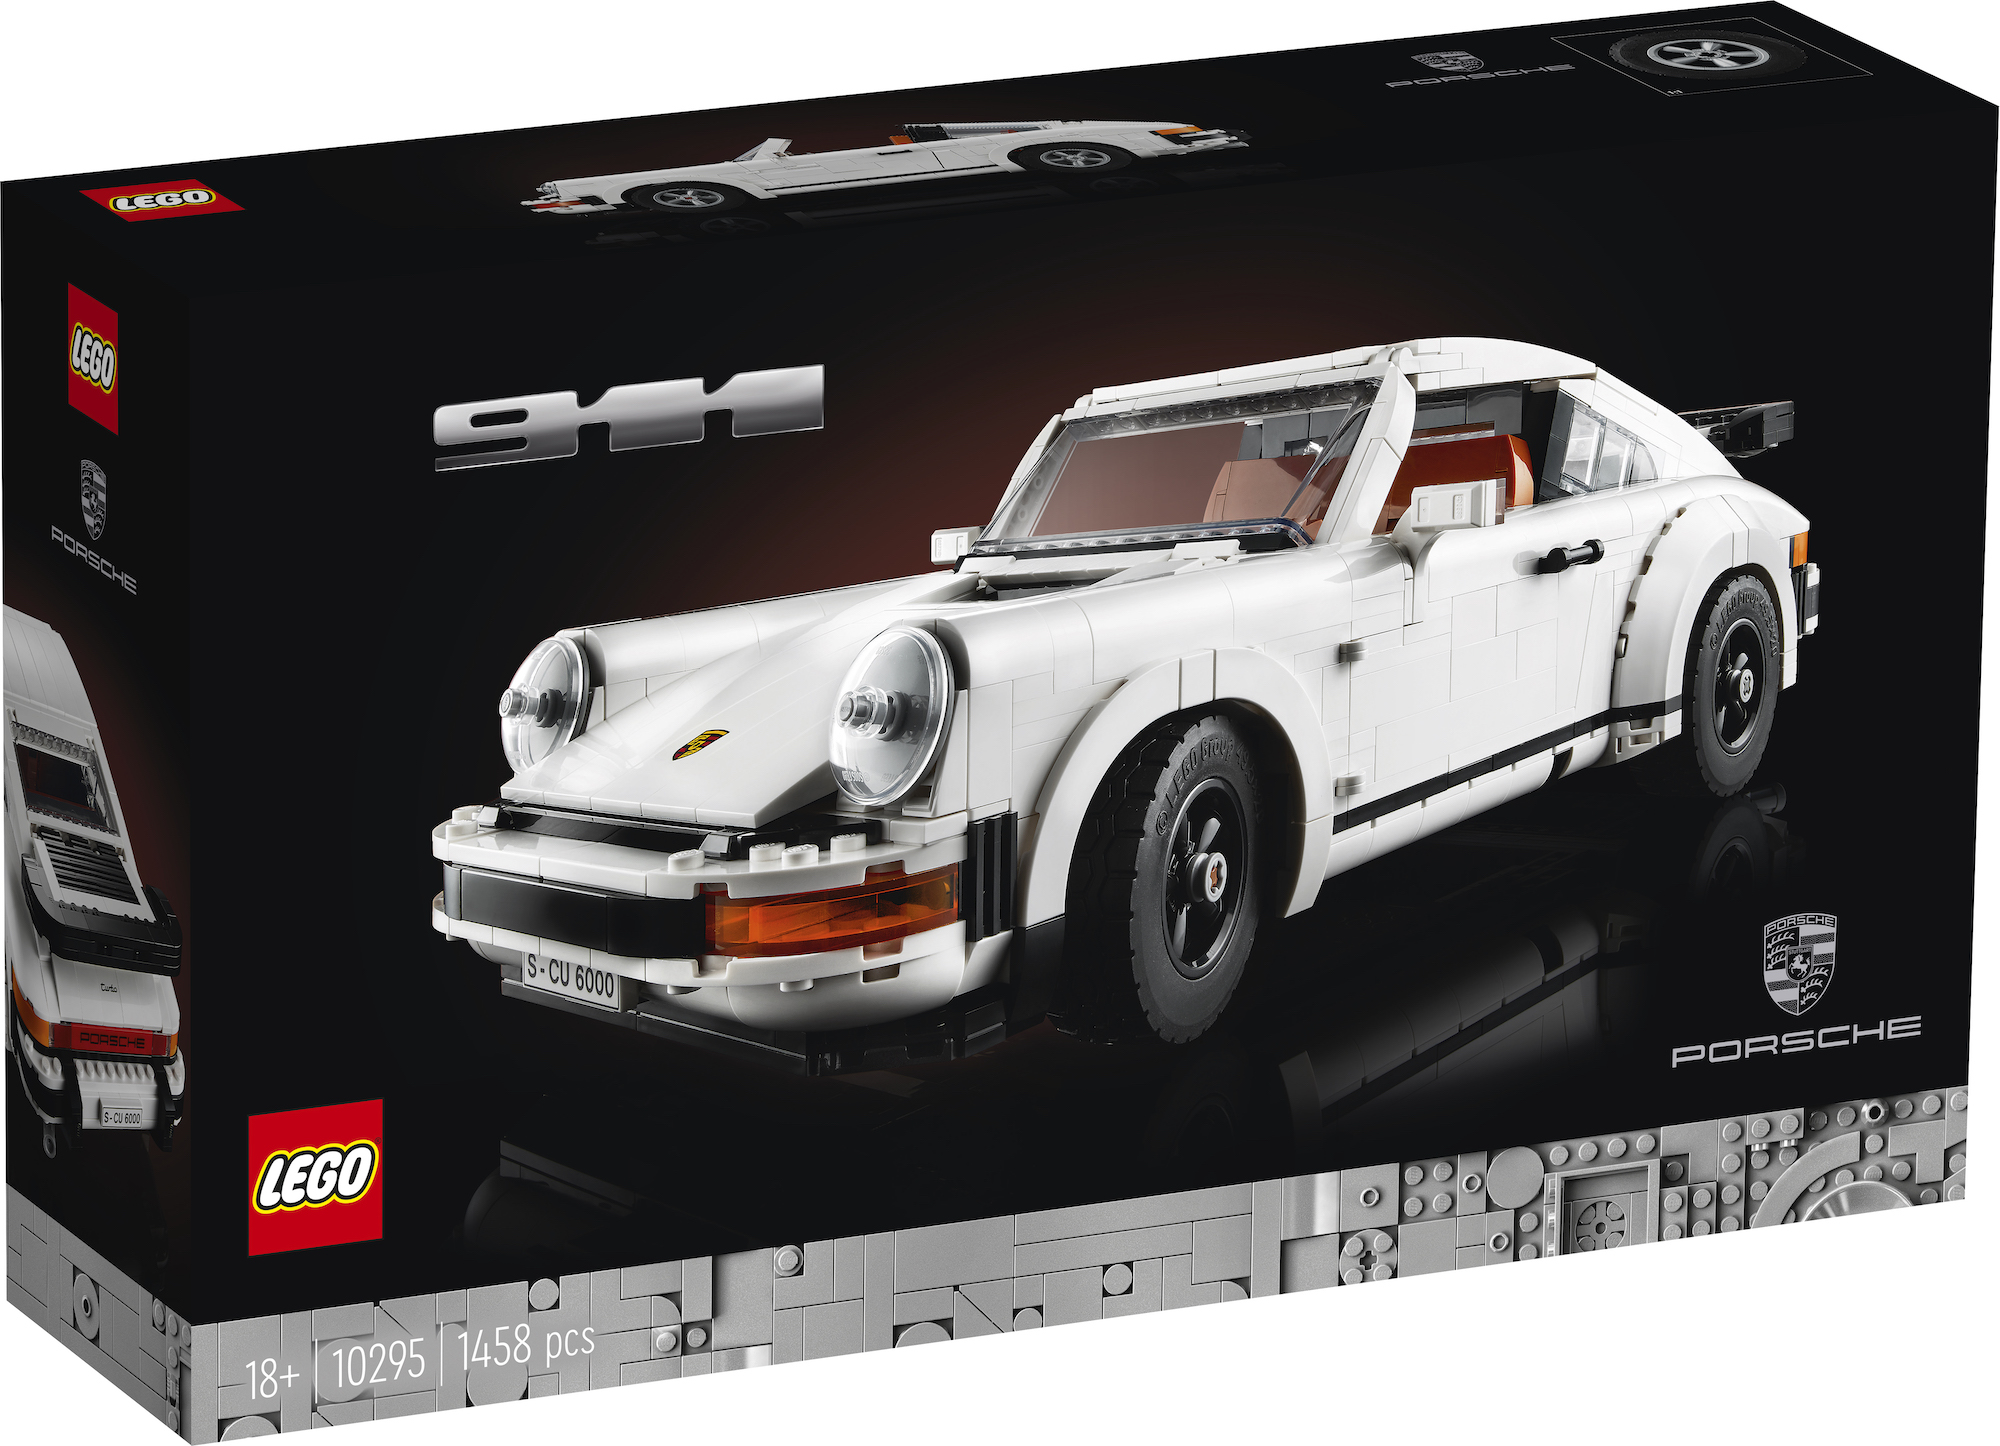 LEGO unveils Porsche 911 Turbo and 911 Targa set